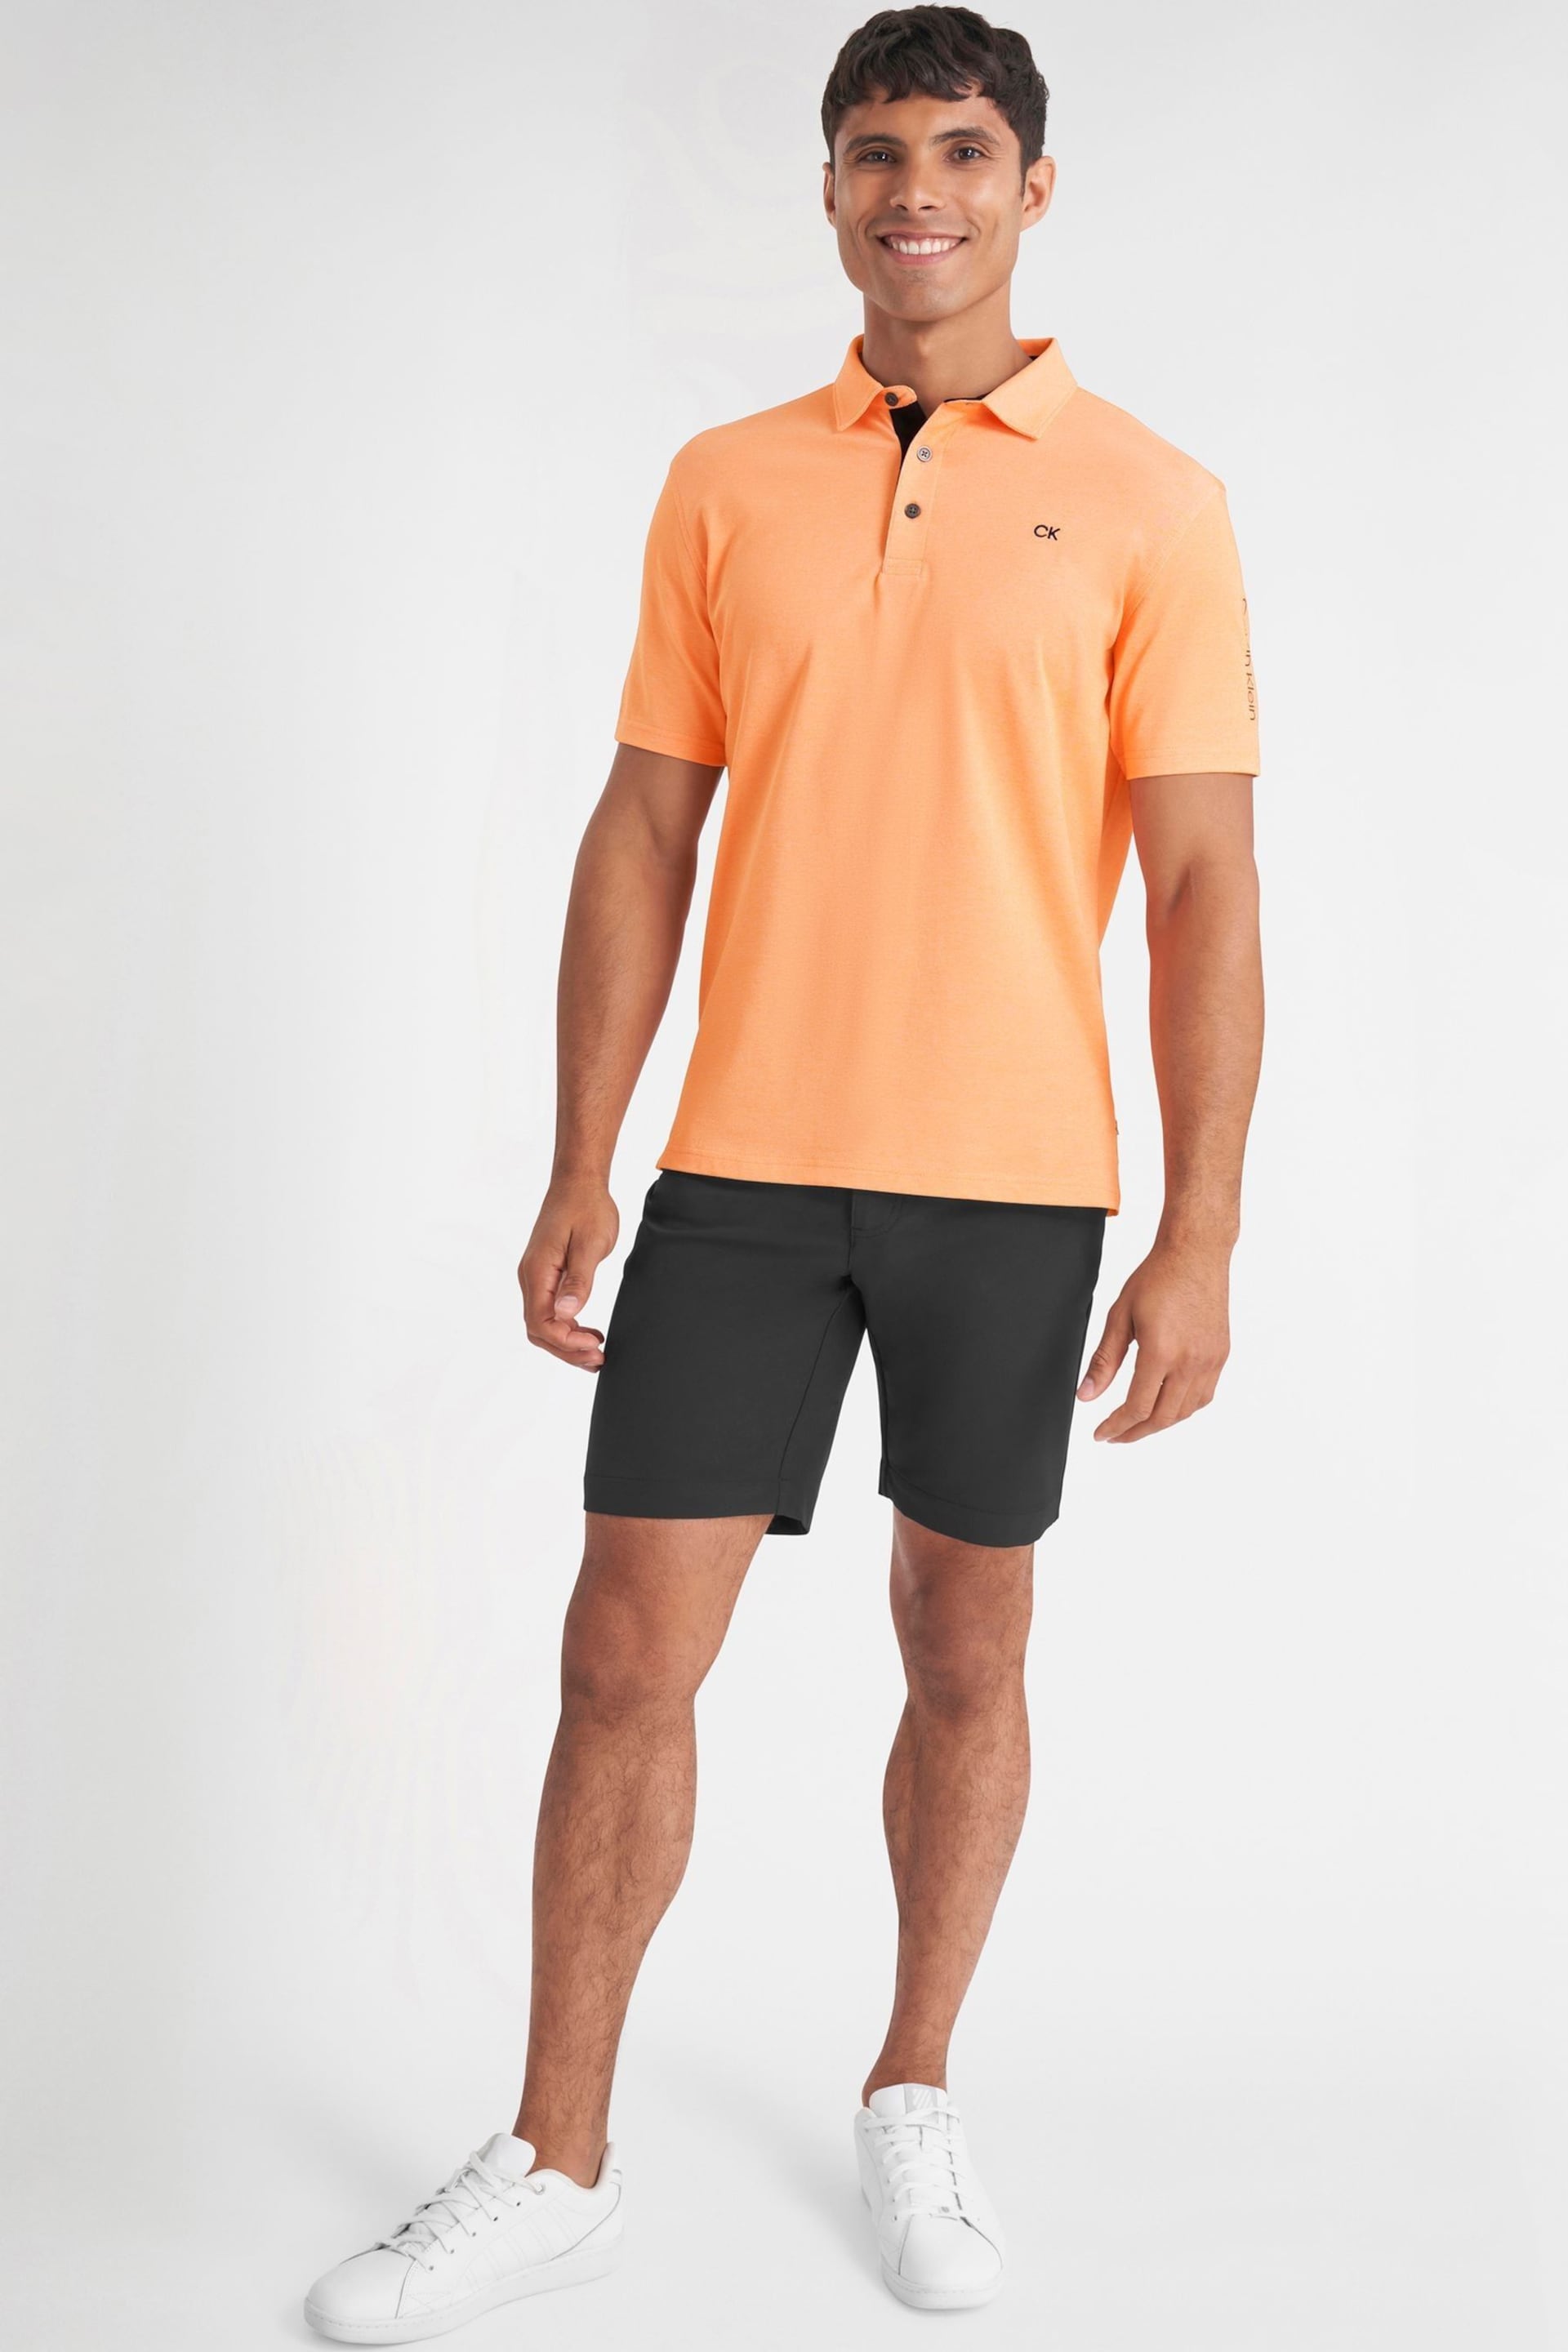 Calvin Klein Orange Golf Uni Polo Shirt - Image 2 of 9